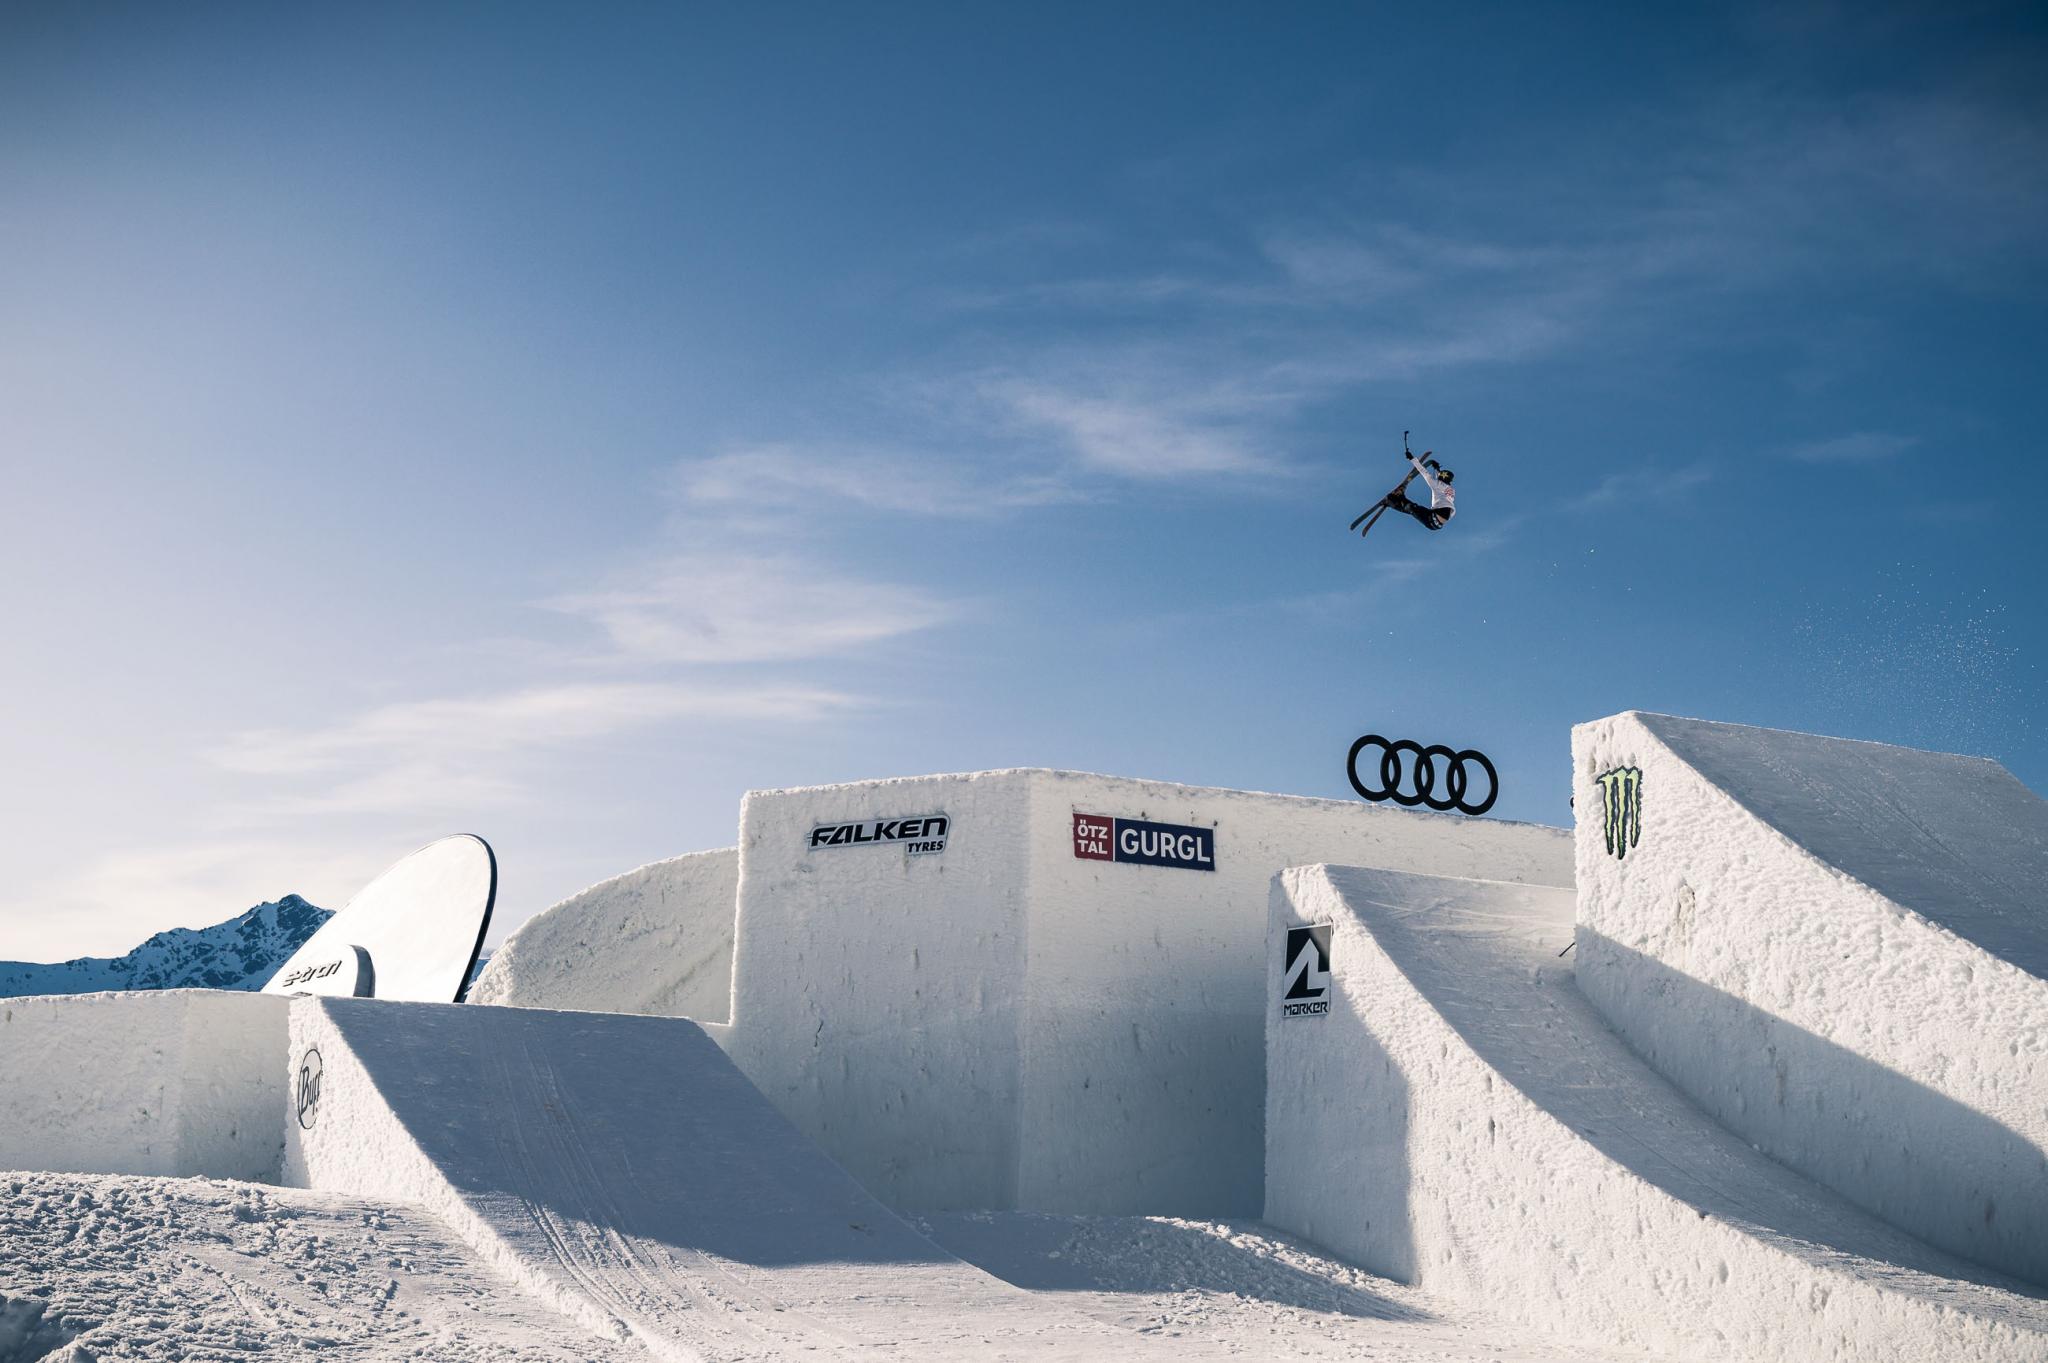 Actief cursief inkt Falken supports Audi Nines skiing, snowboarding event in Austria - Tyrepress